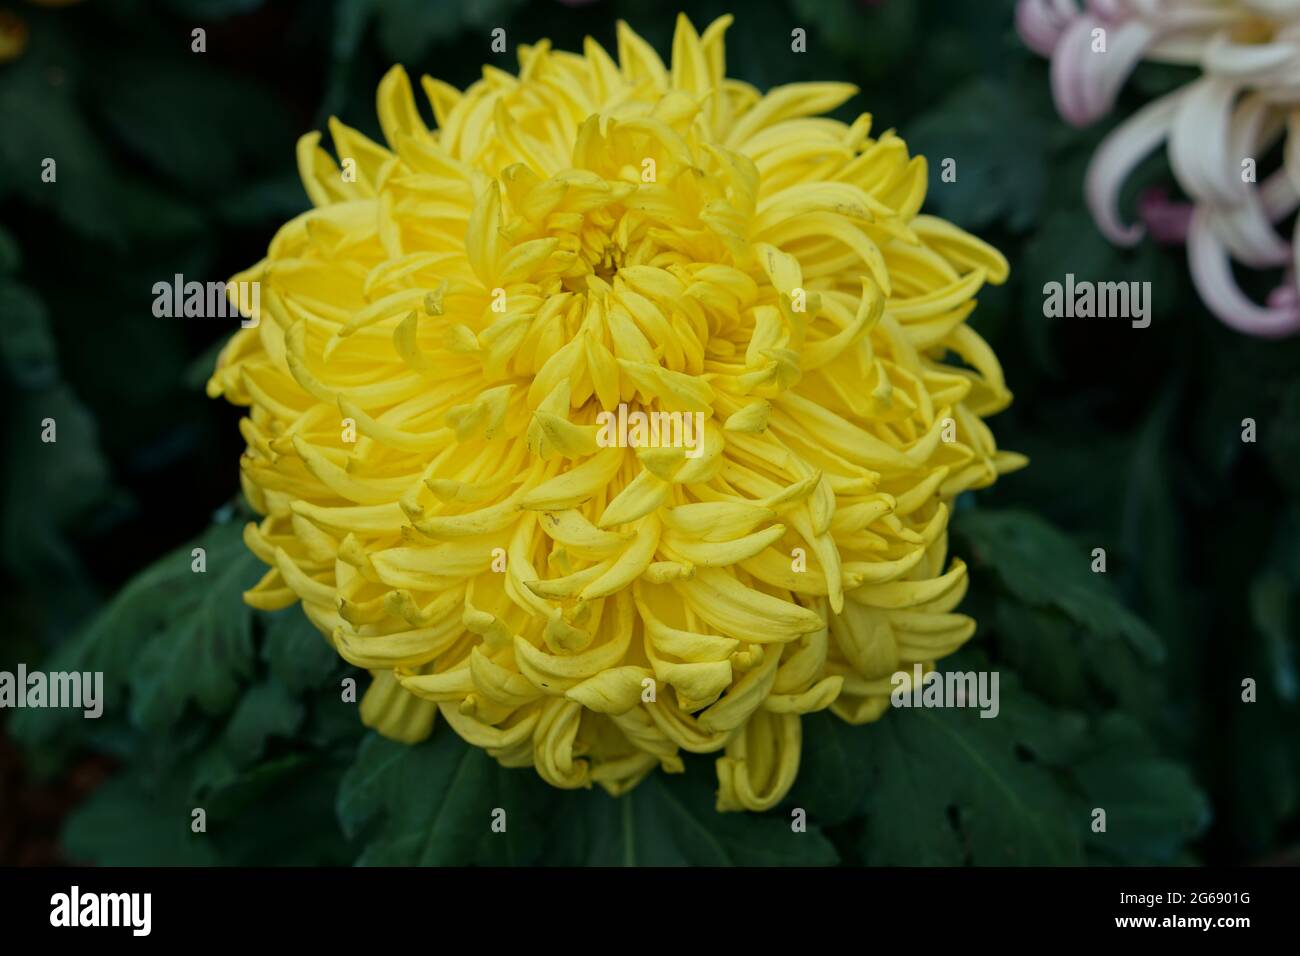 Yellow Dahlia flowerhead photo - Chrysanthemum grandiflorum Stock Photo